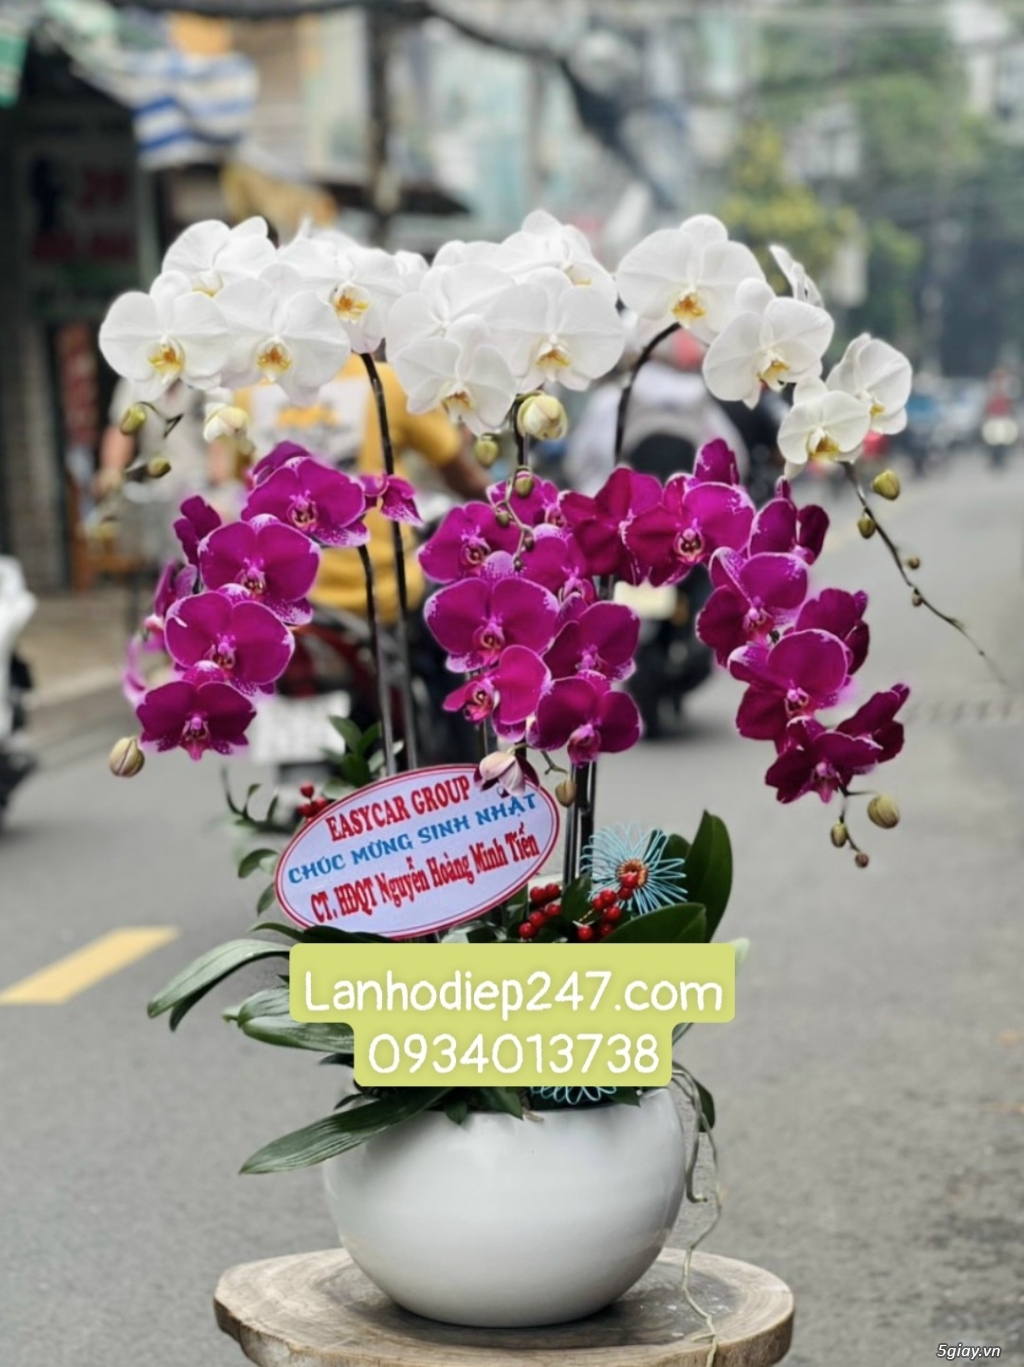 Shop hoa chuyên lan hồ điệp cao cấp nổi tiếng tphcm - Hoa Sài Gòn 247